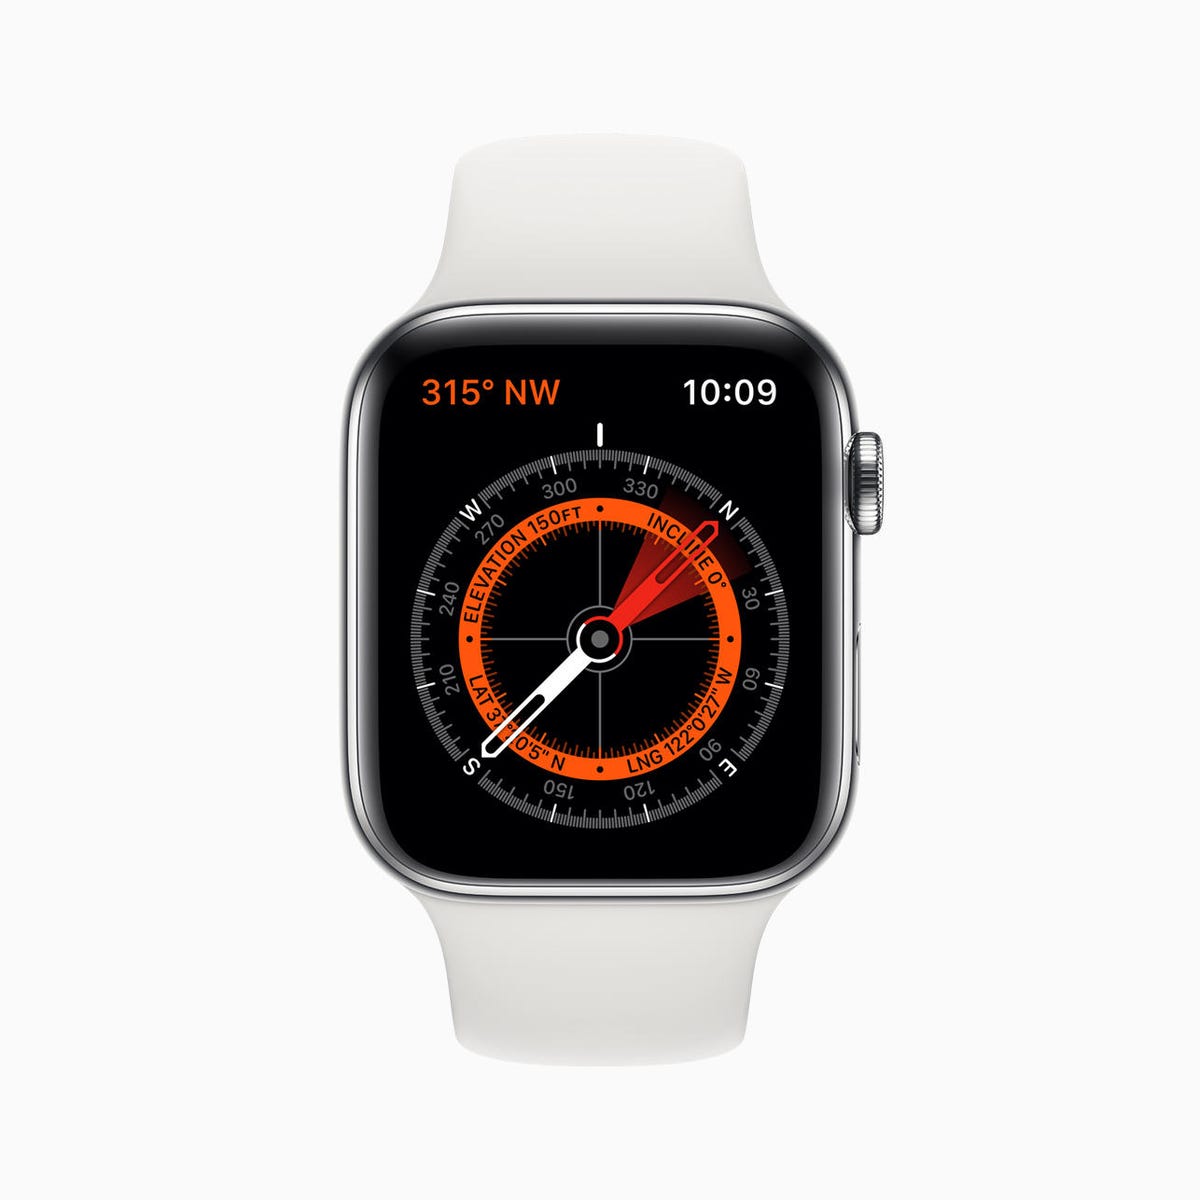 apple-watch-series-5-compass-screen-091019